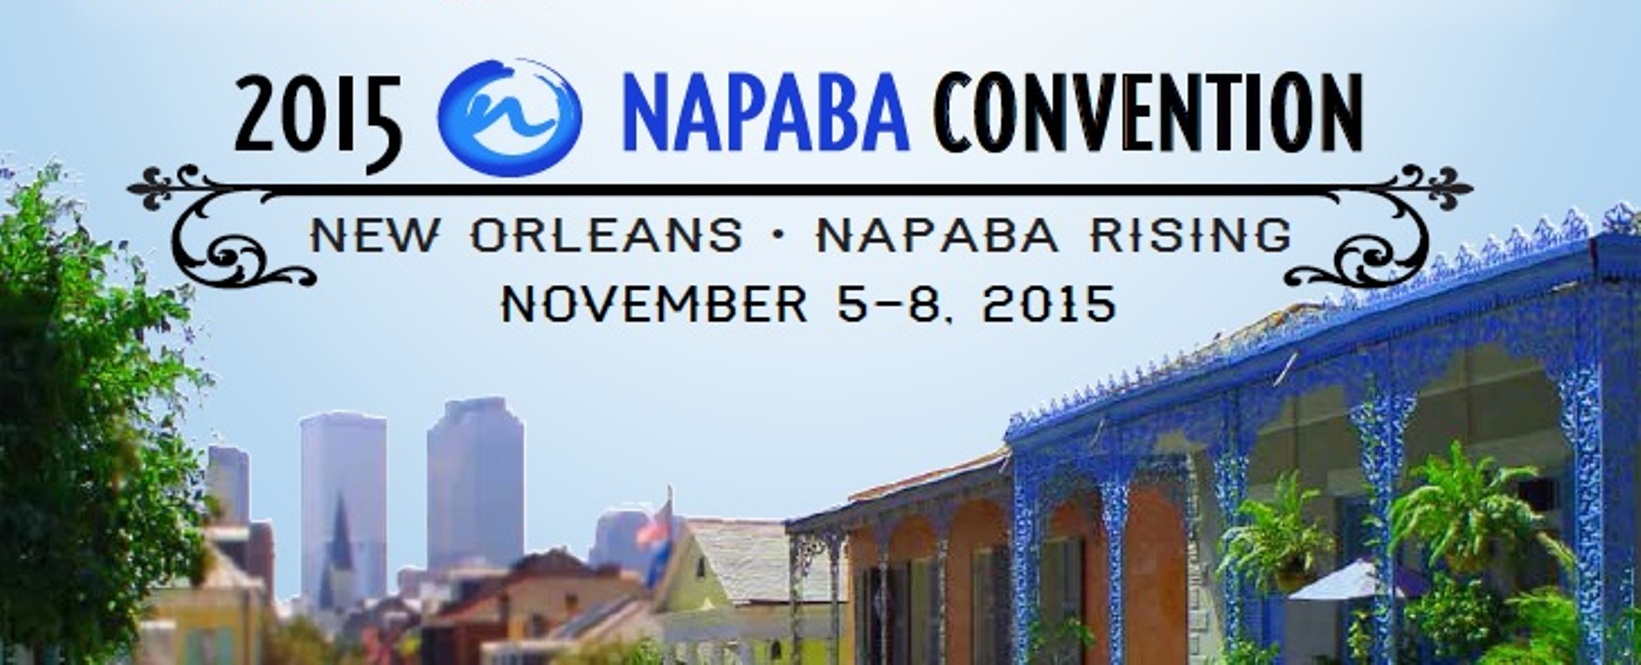 NAPABA Convention